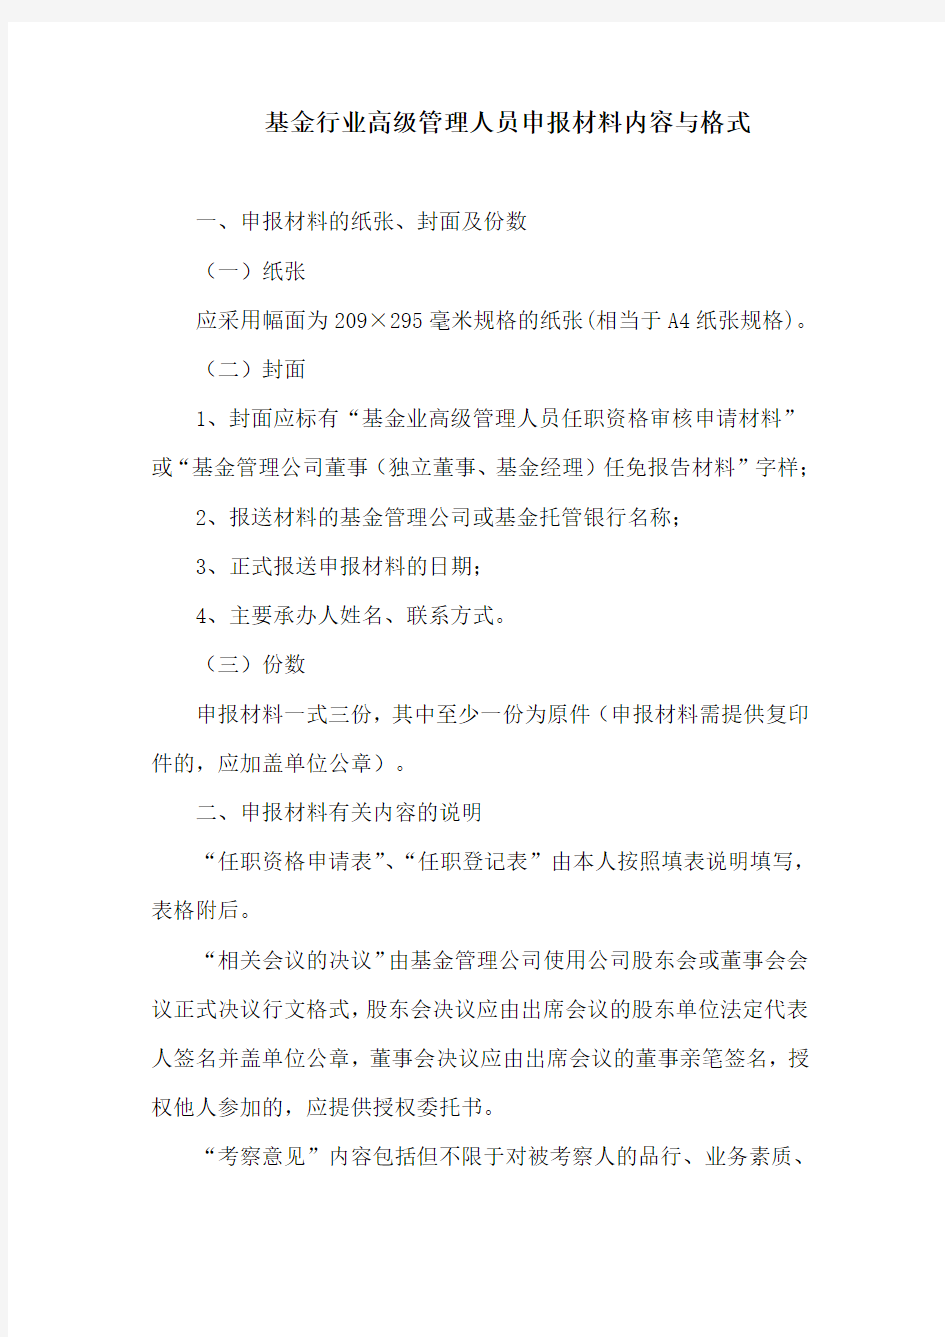 申报材料的格式及有关内容的说明-中国证监会